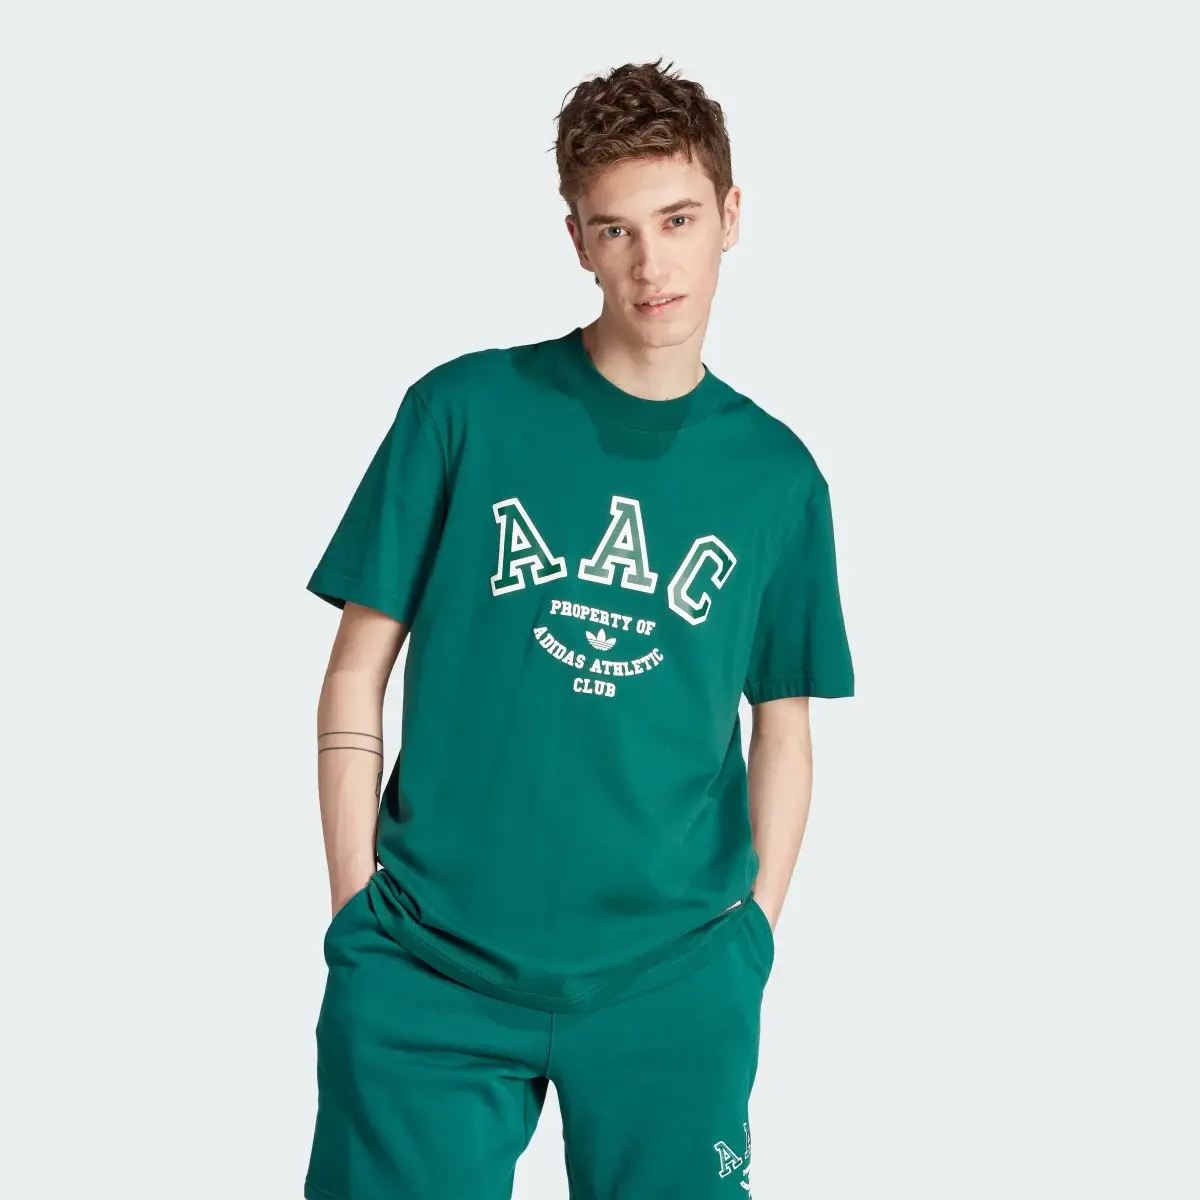 Adidas RIFTA Metro AAC T-Shirt. 2